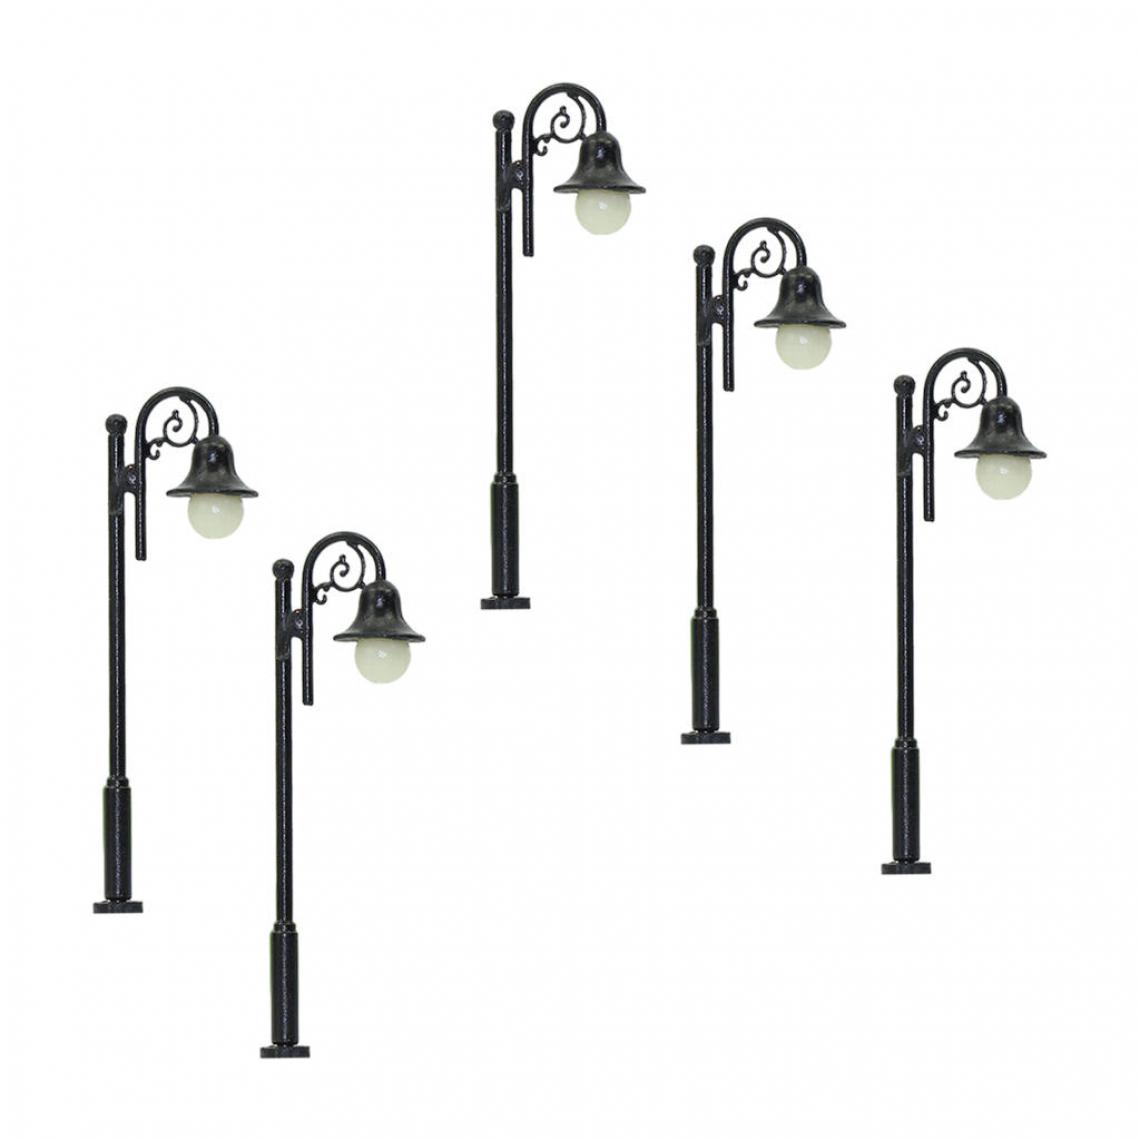 marque generique - Ho échelle lampadaire lumière rue feux en plein air - Accessoires maquettes